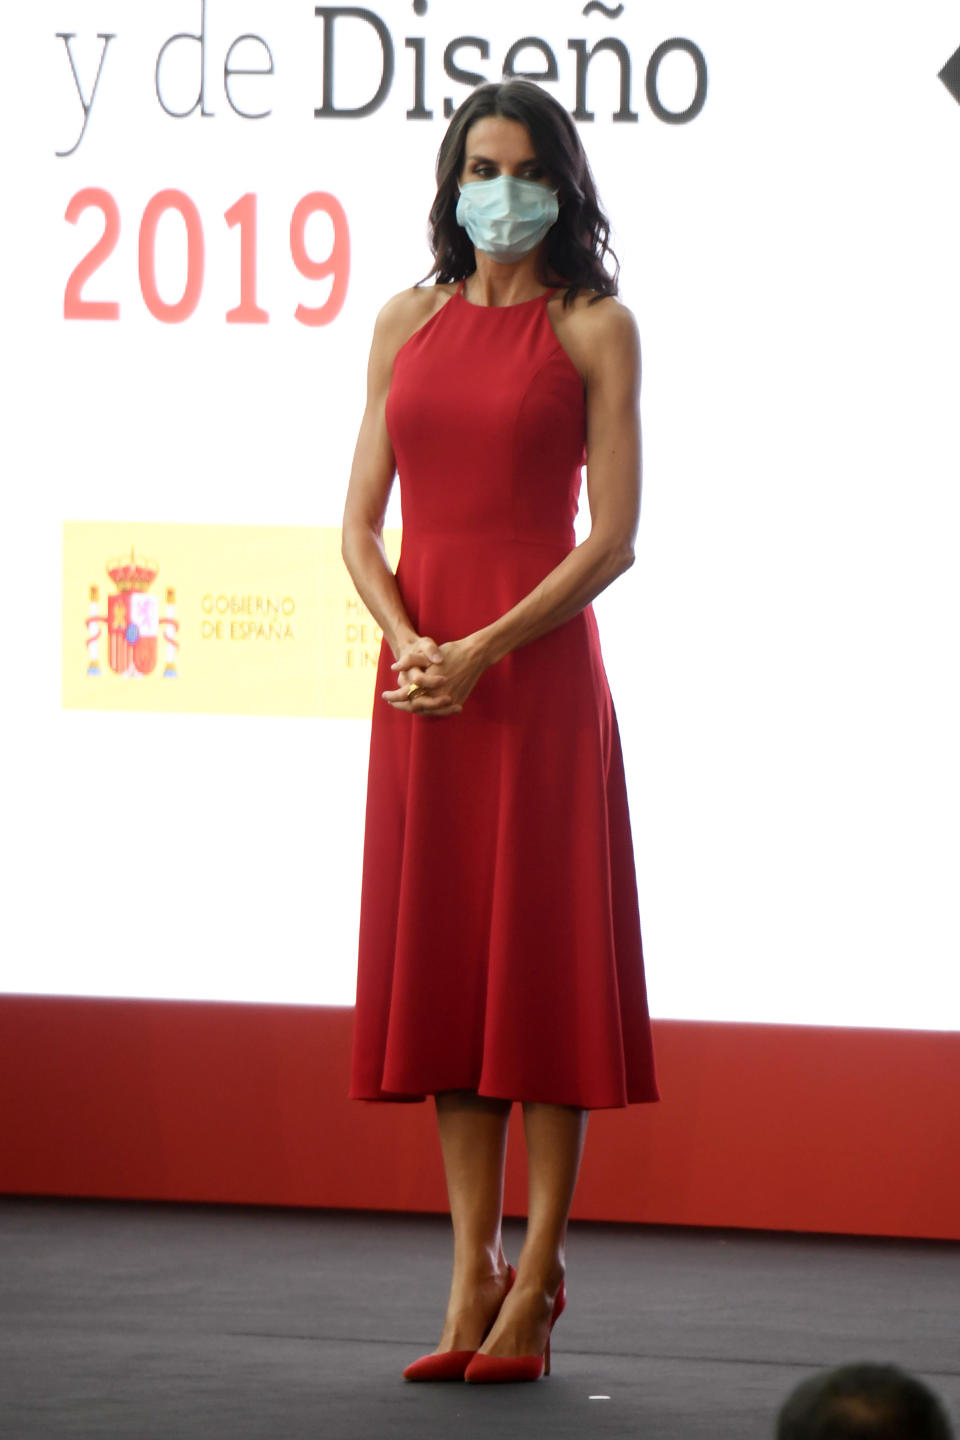 Su <em>total red look</em> de los Premios Nacionales de Innovación y Diseño 2019, obviamente, no podía faltar en esta selección. Y es que aquel vestido rojo con escote halter le sentaba de maravilla a la reina. (Foto: Carlos Alvarez / Getty Images)